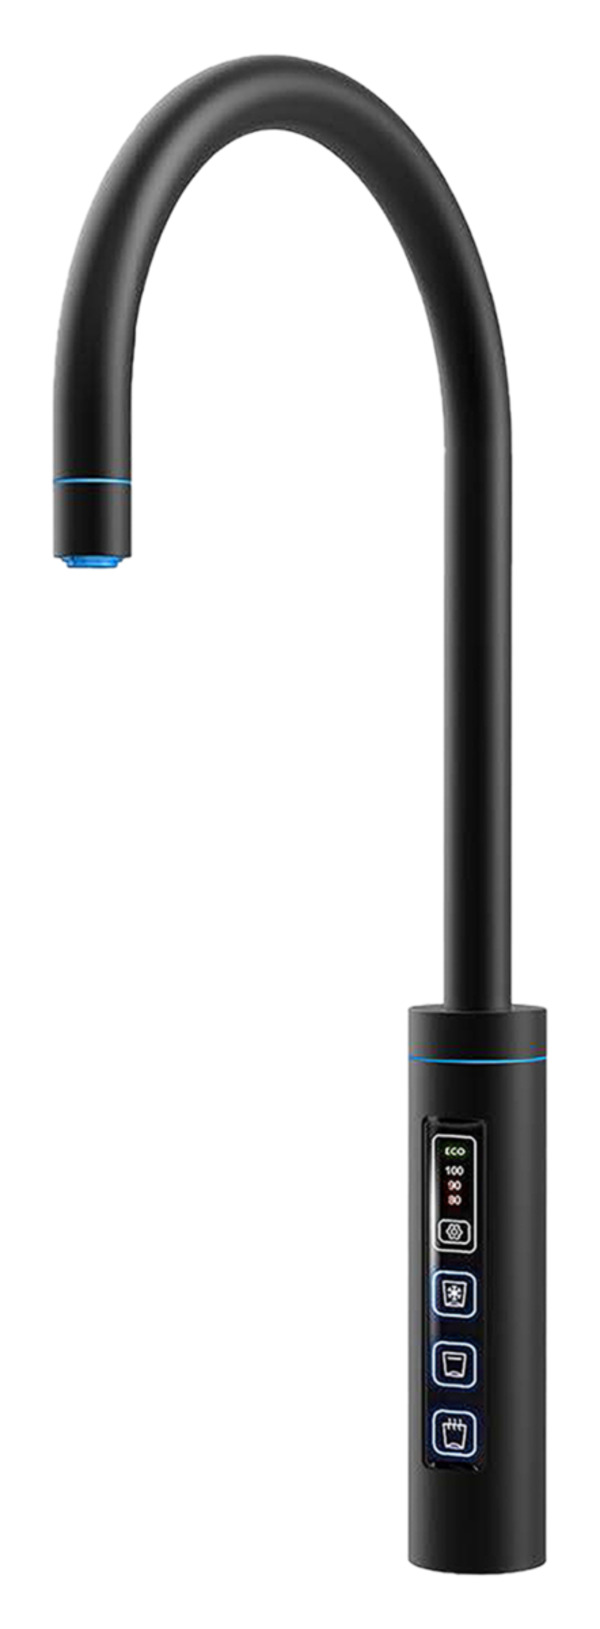 Bild 1 von 3in1 Touch Armatur (für Sprudler) rund, matt schwarz (XO-AR 3005) - 0%-Finanzierung (PayPal)